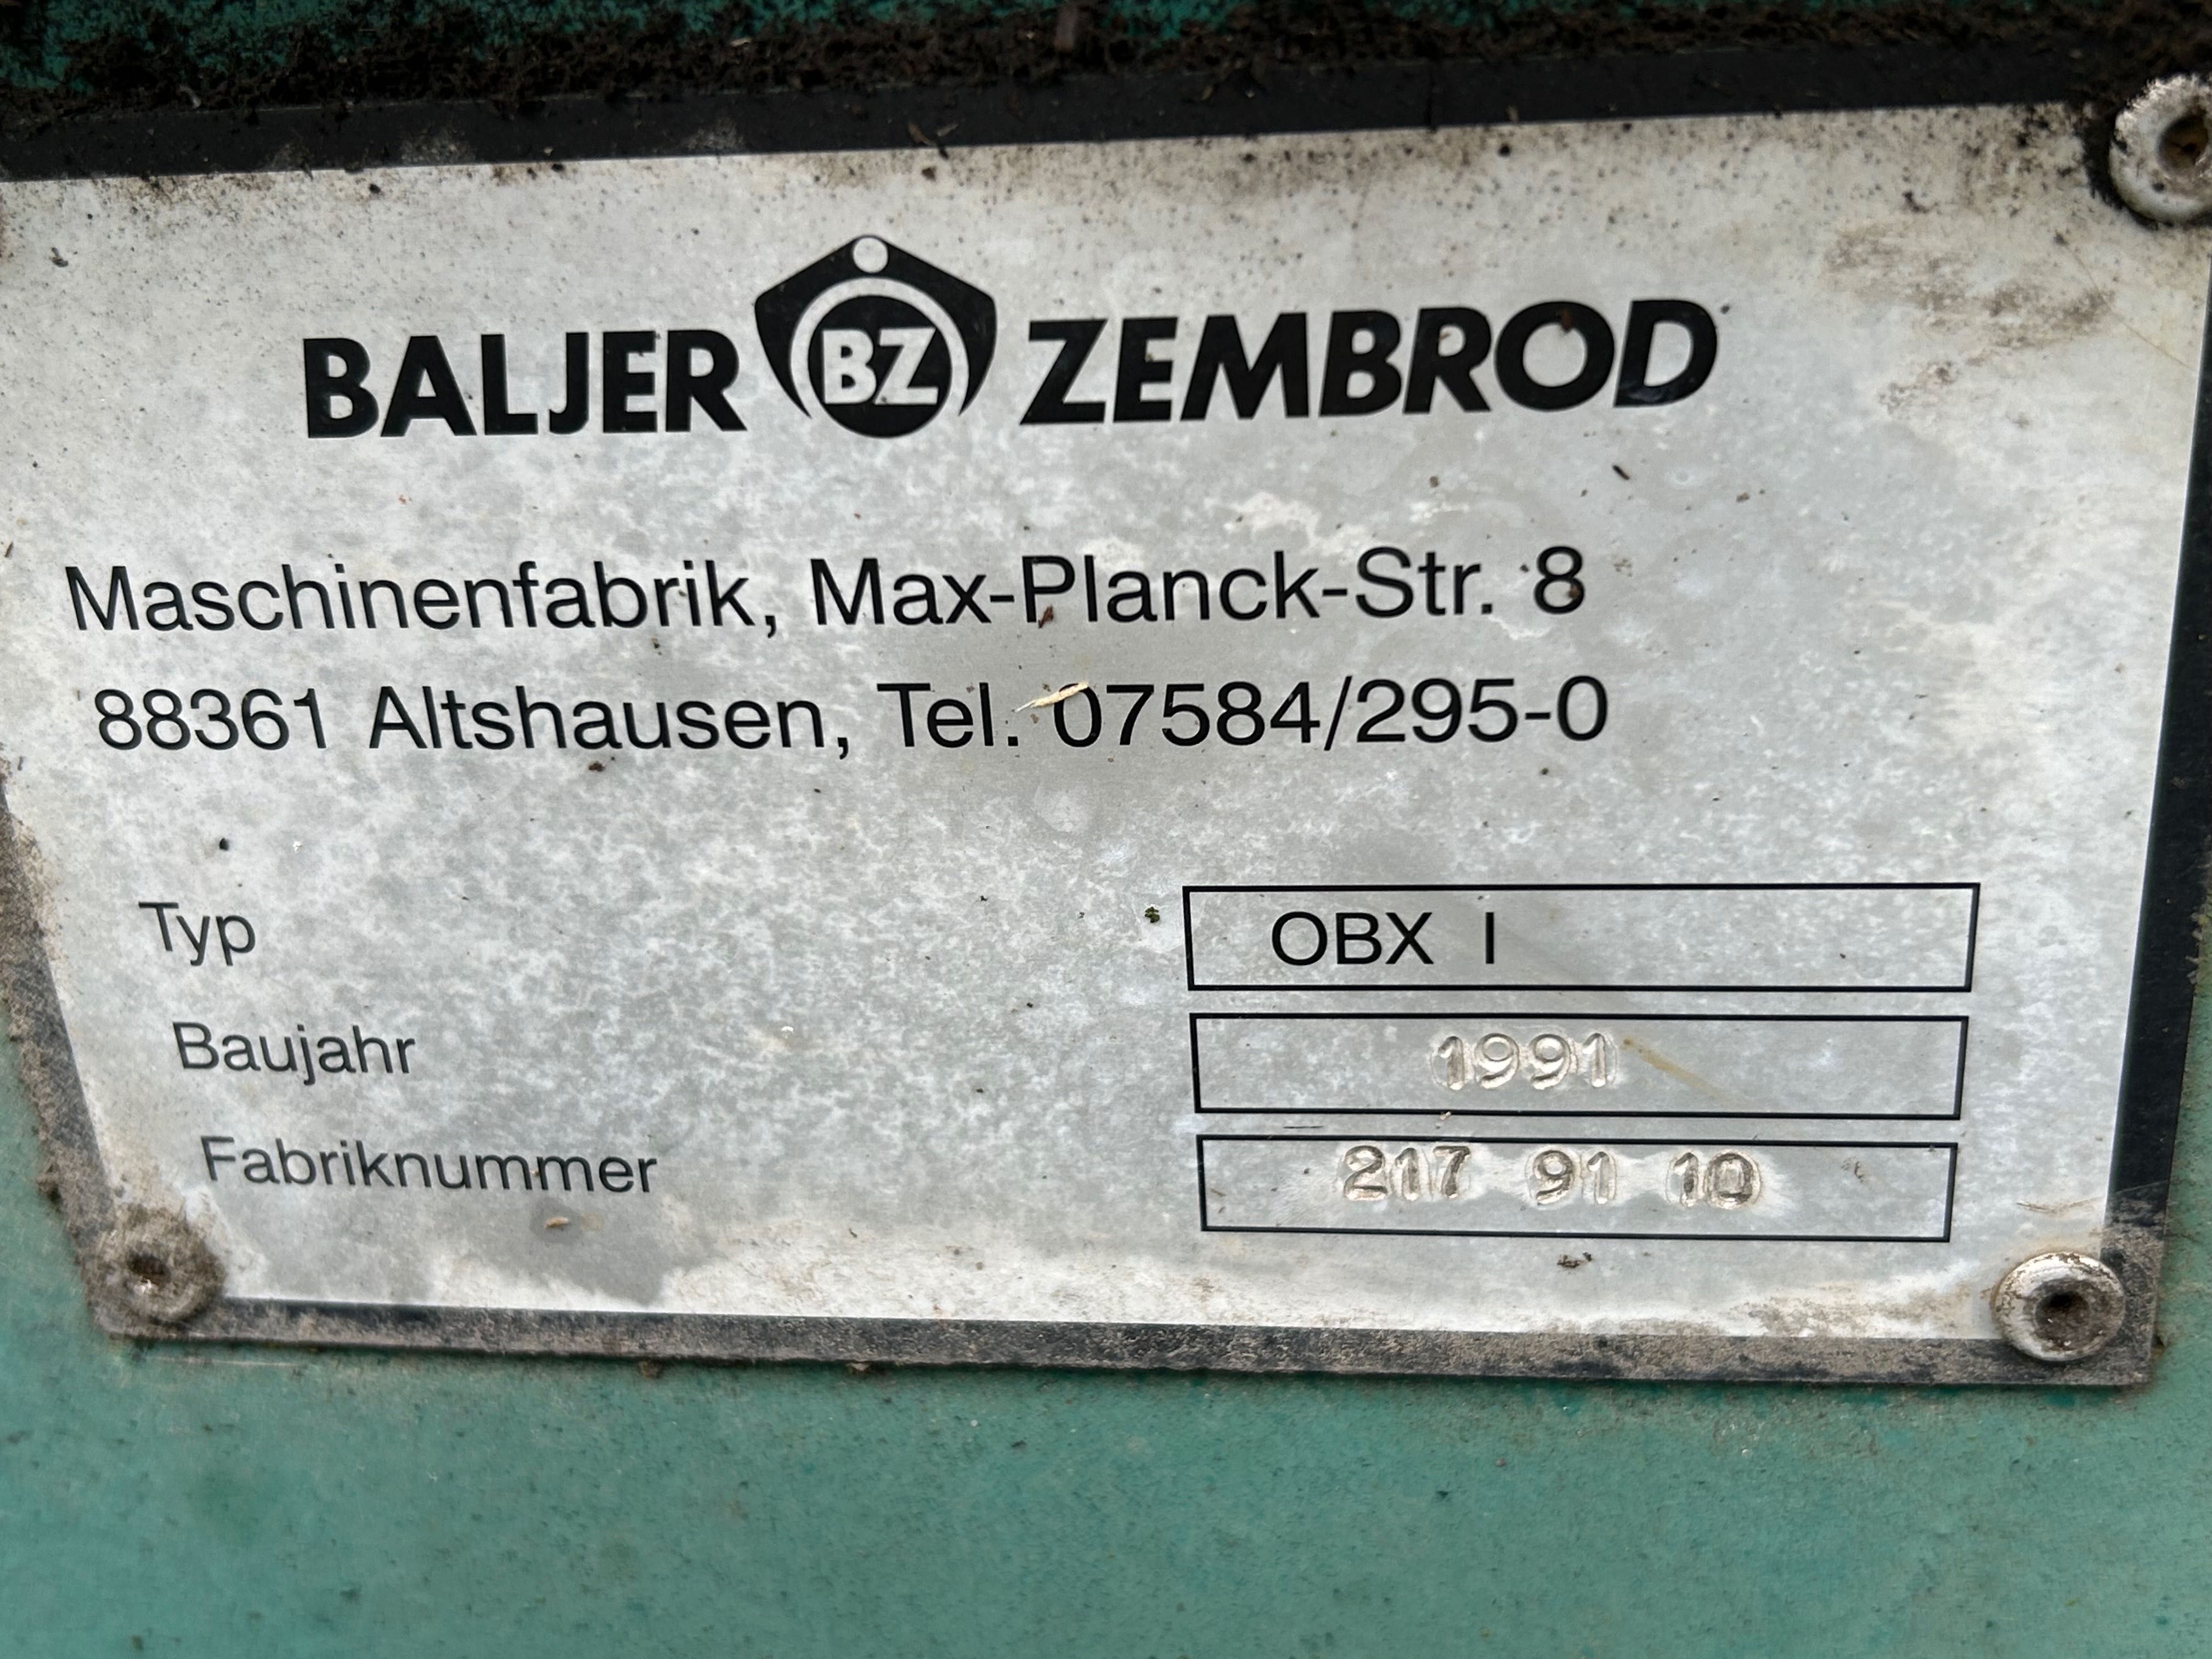 Baljer Zembrod OBX1